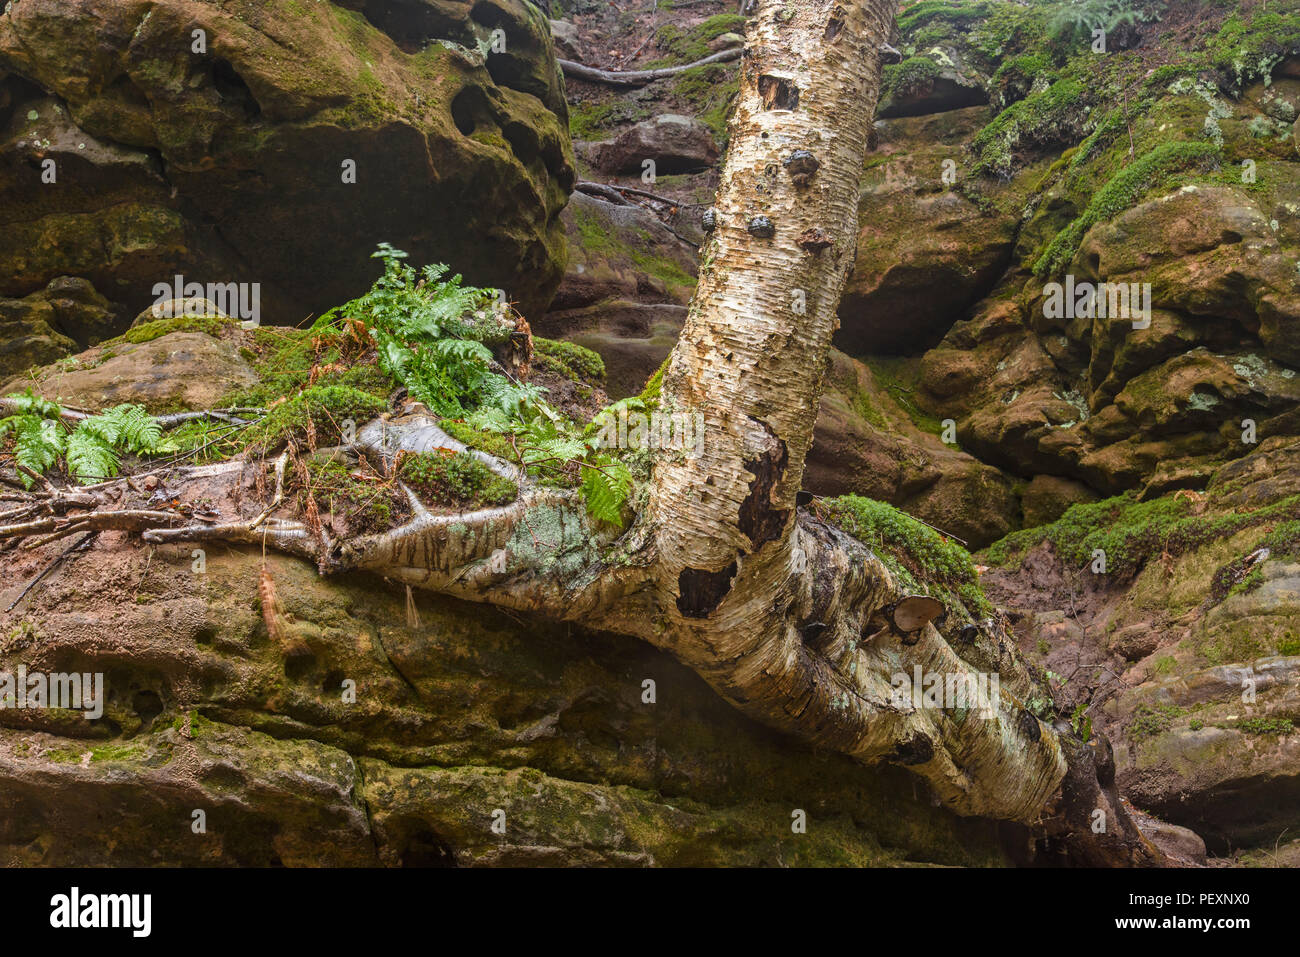 Escarpe de piedra arenisca con troncos de árboles y raíces de abedul, Munising Falls zona escénica, Munising, Michigan, EE.UU. Foto de stock